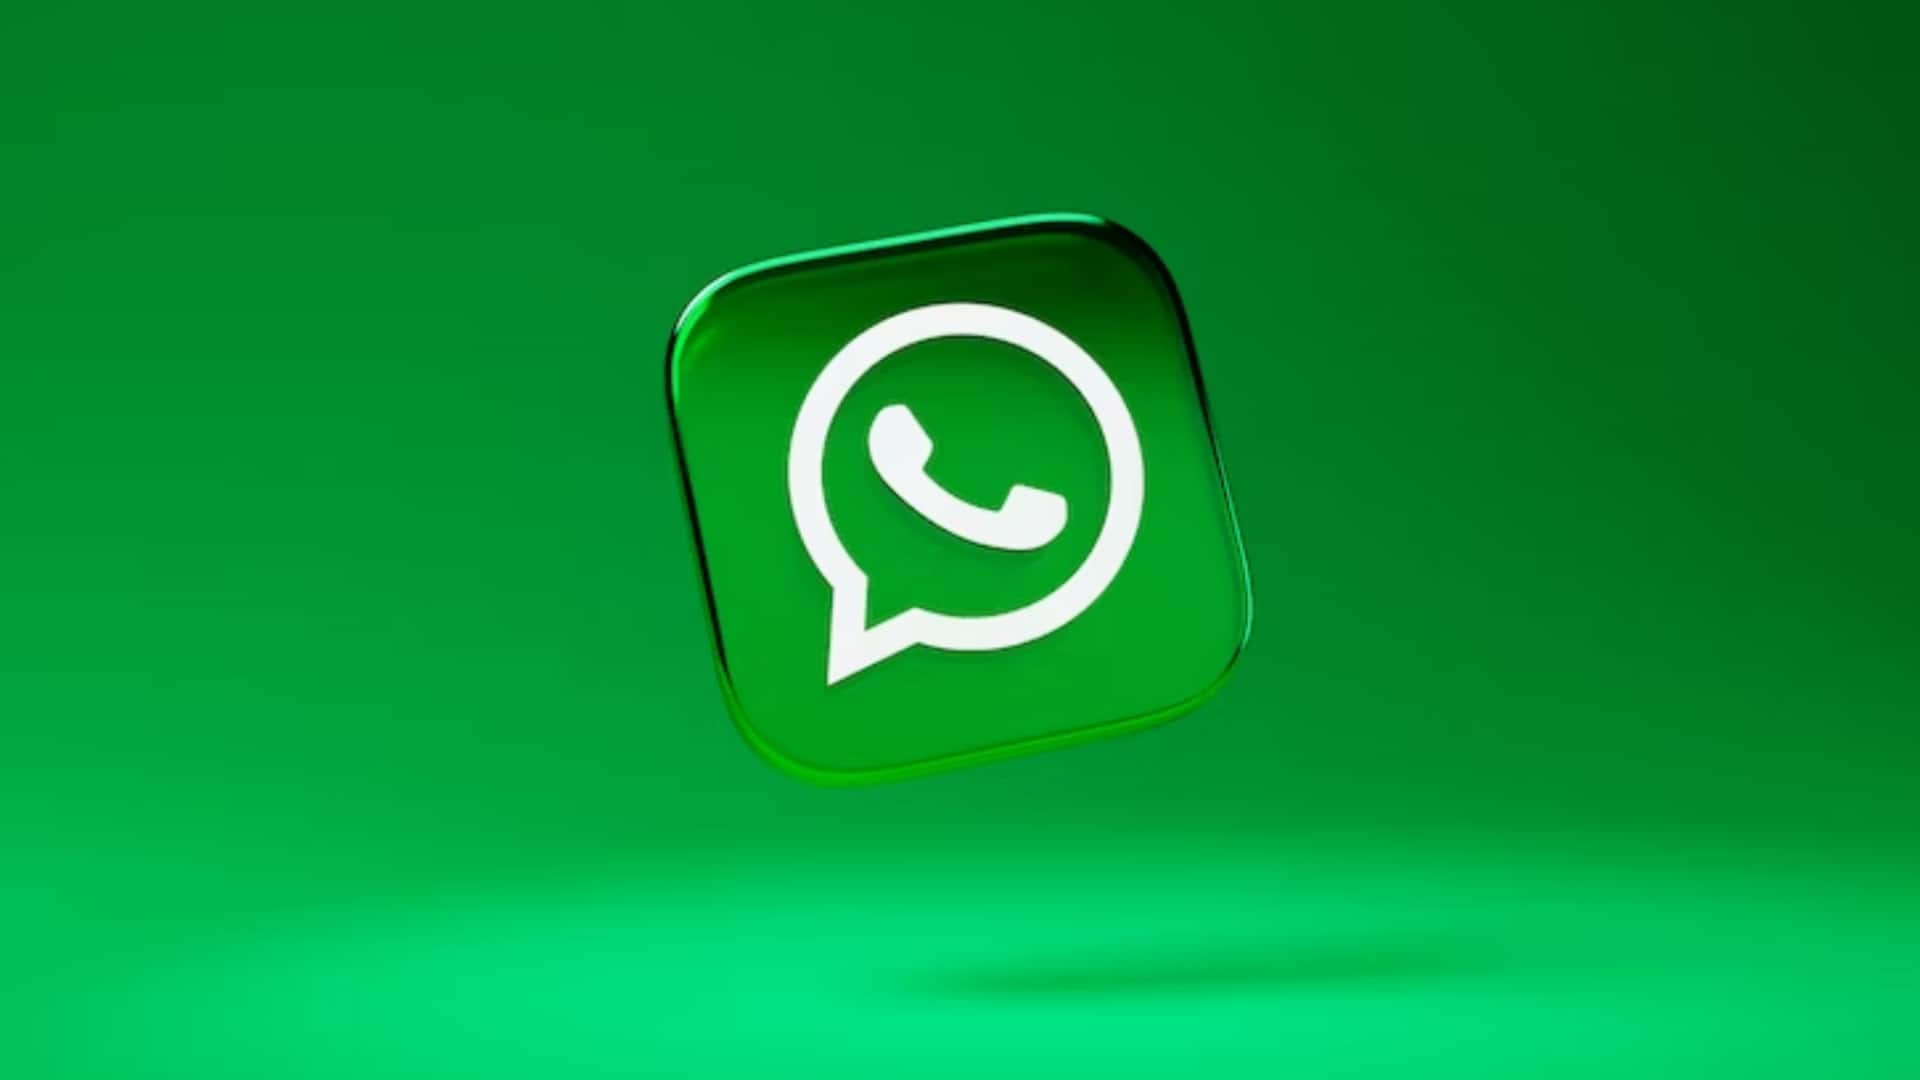 विदेशी नंबरों से स्पैम कॉल के बाद व्हाट्सऐप ने लॉन्च किया नया 'सिक्योरिटी सेंटर'